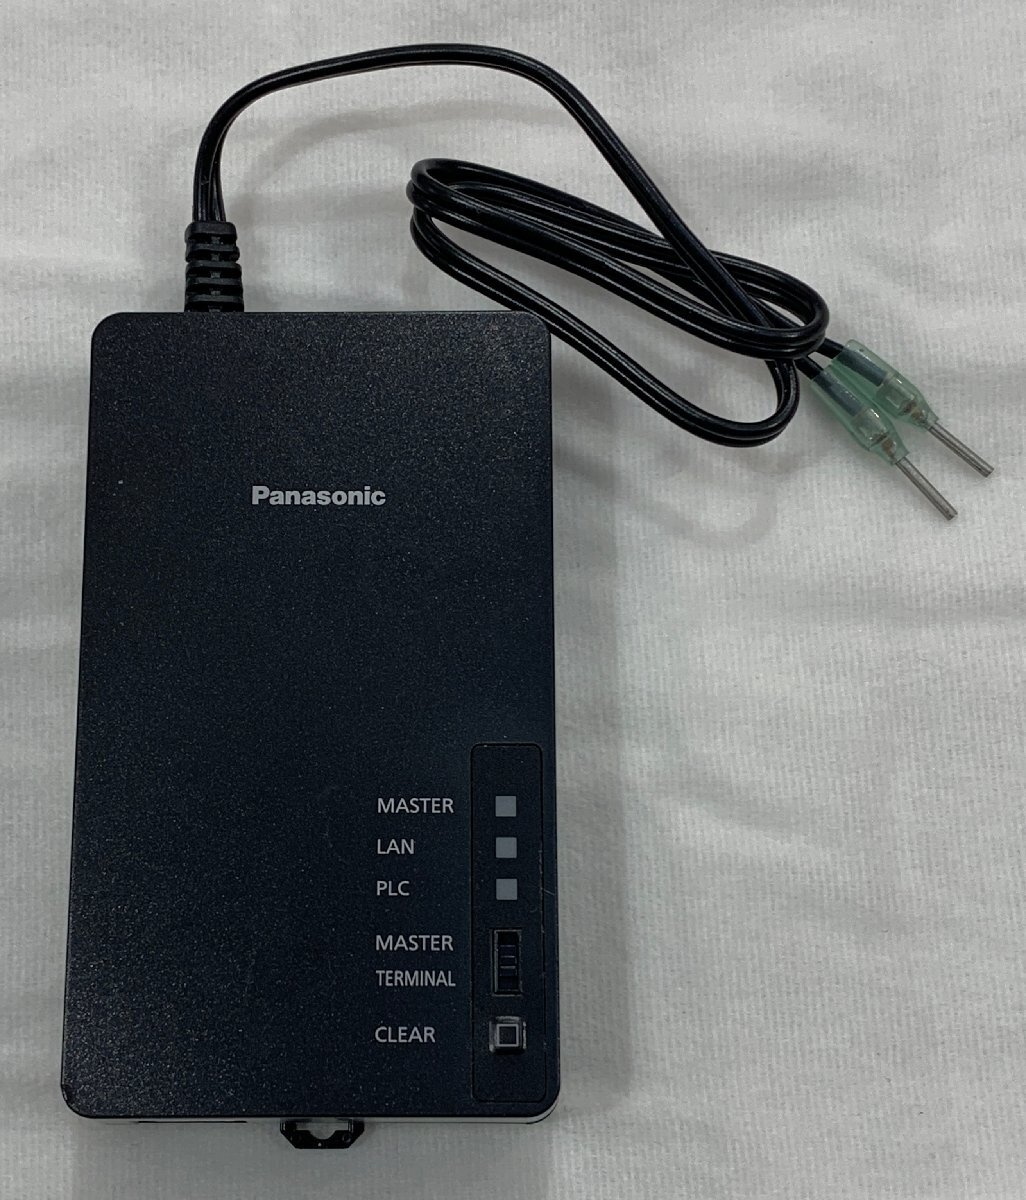 [6HY.05014A]*1 иен старт *Panasonic* Panasonic *HD-PCL соответствует *PLC адаптор *WPN7112* наружный для * терминал установлена подставка модель *